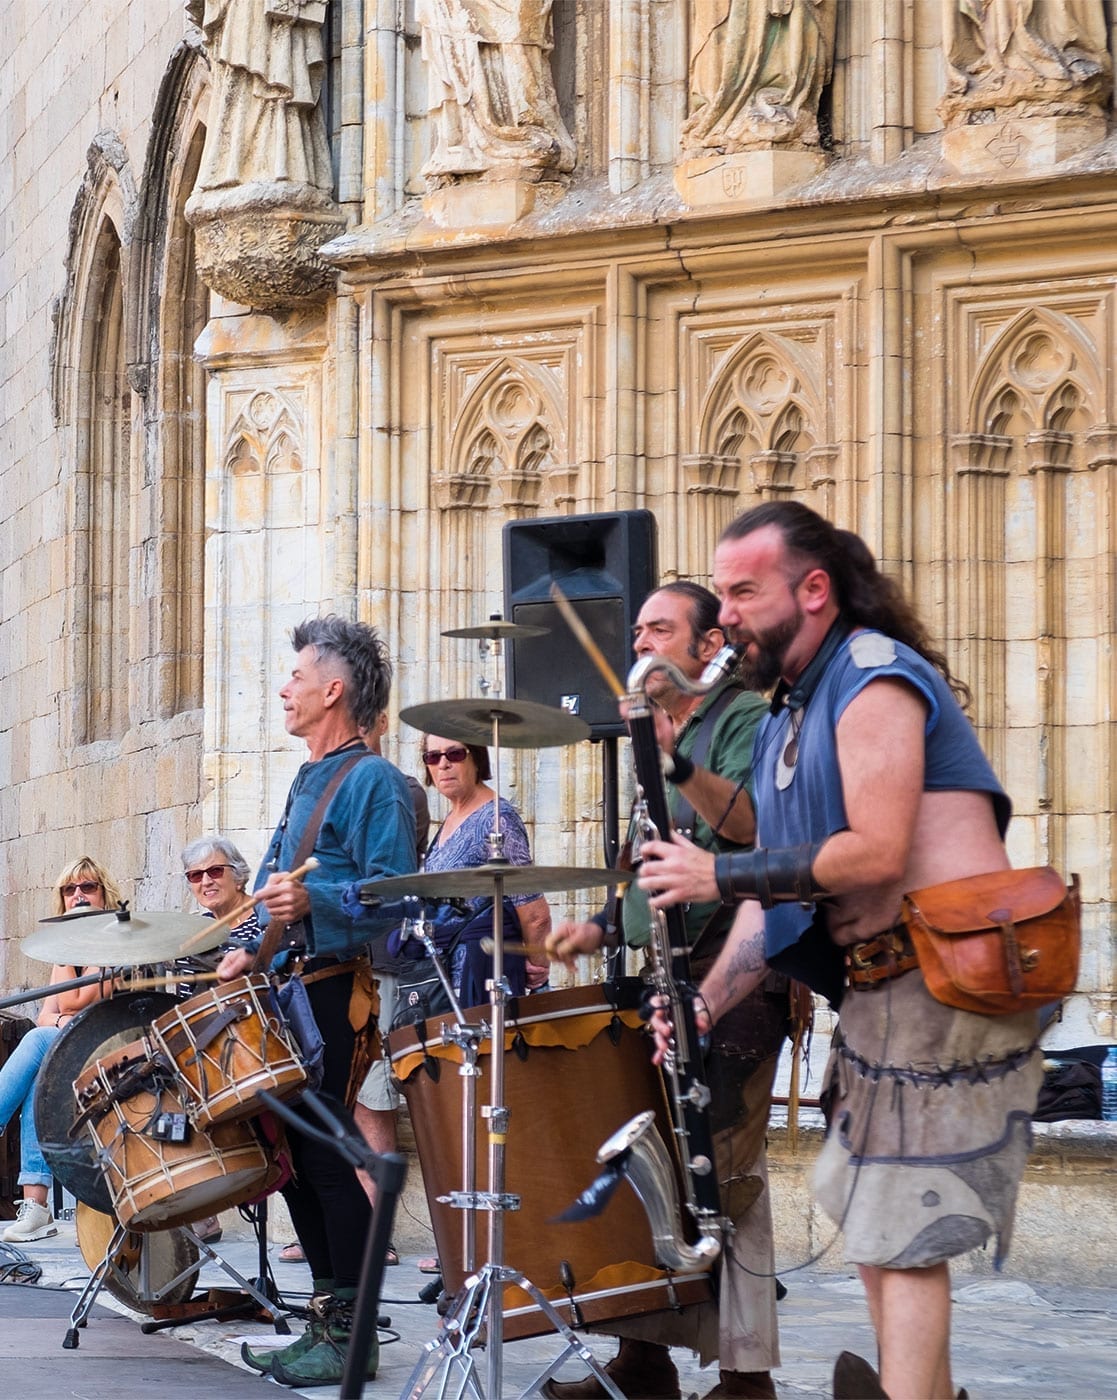 Festival Terra de Trobadors Castello d'Empúries, costa brava, medieval, live music, september event